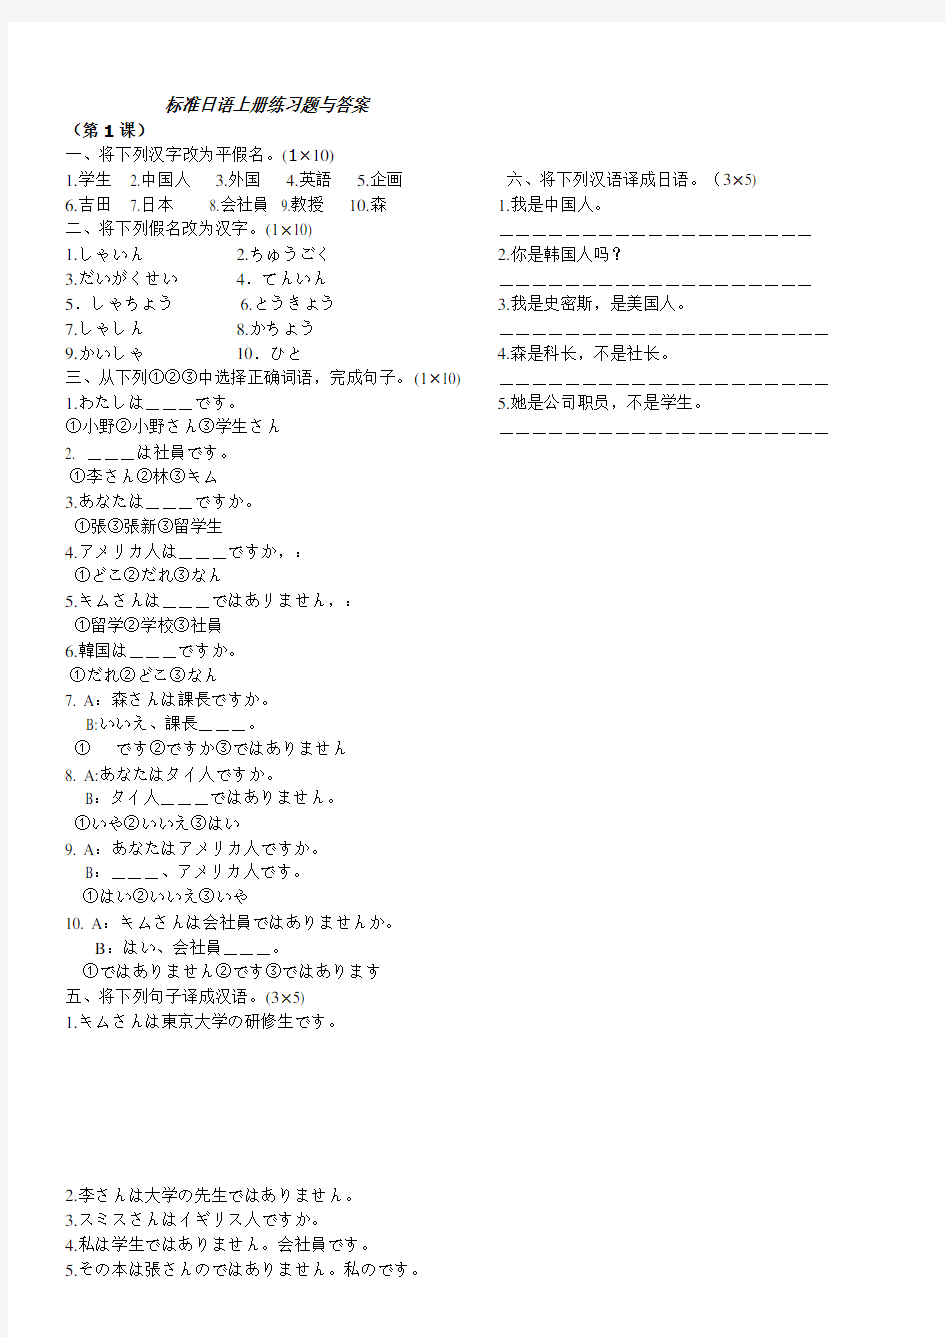 标准日本语初级上册练习题与答案详细